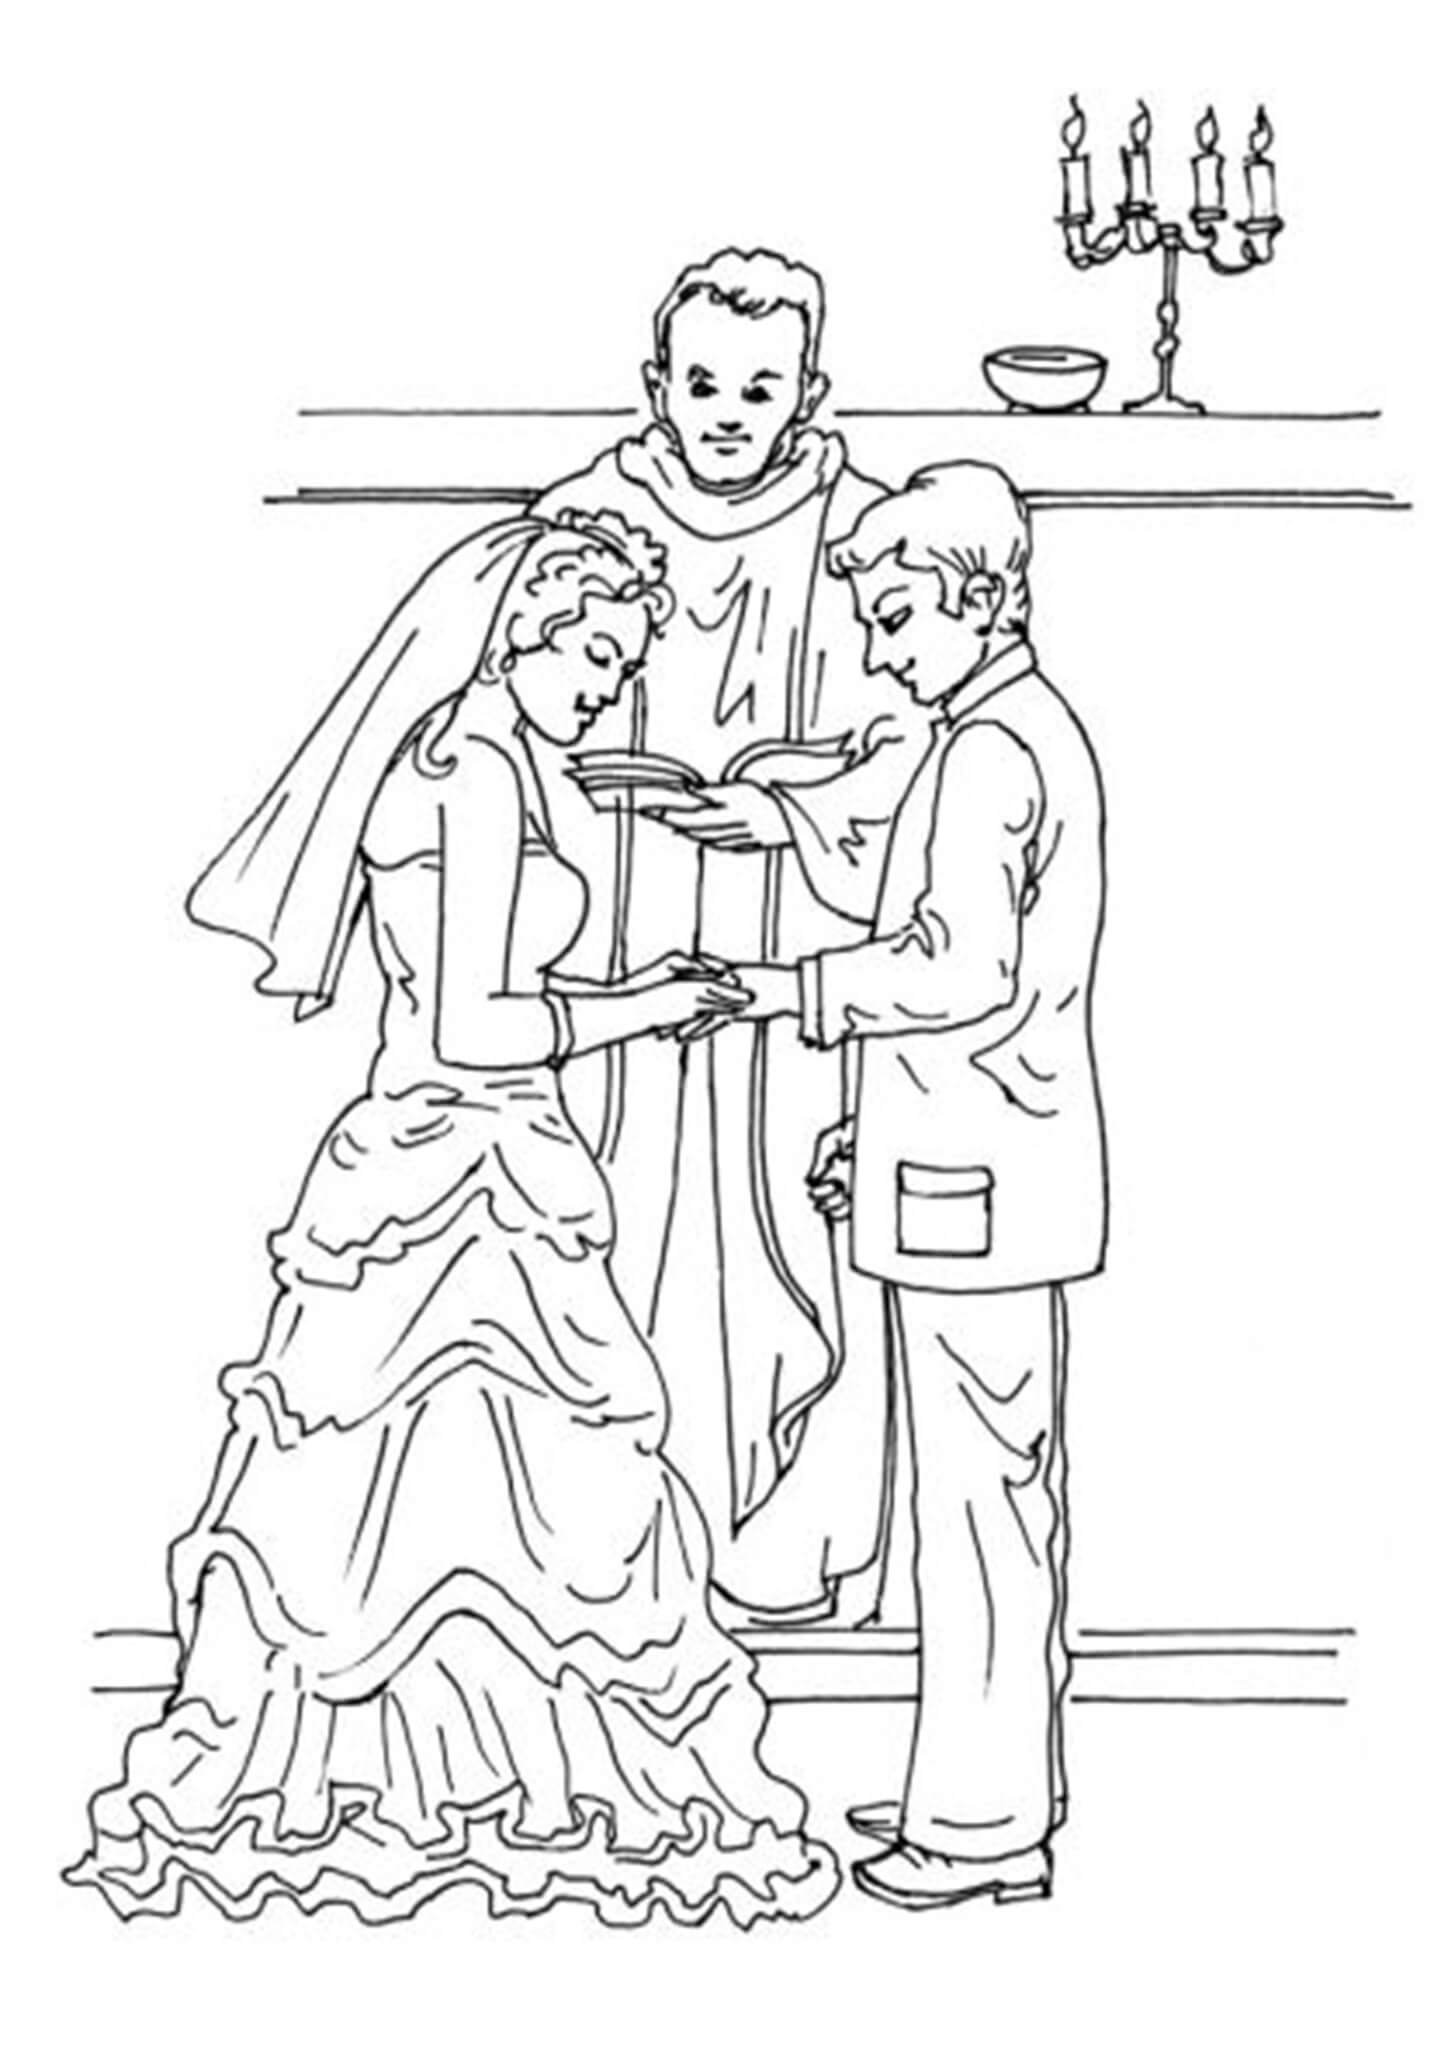 Printable Coloring Sheets Wedding Theme